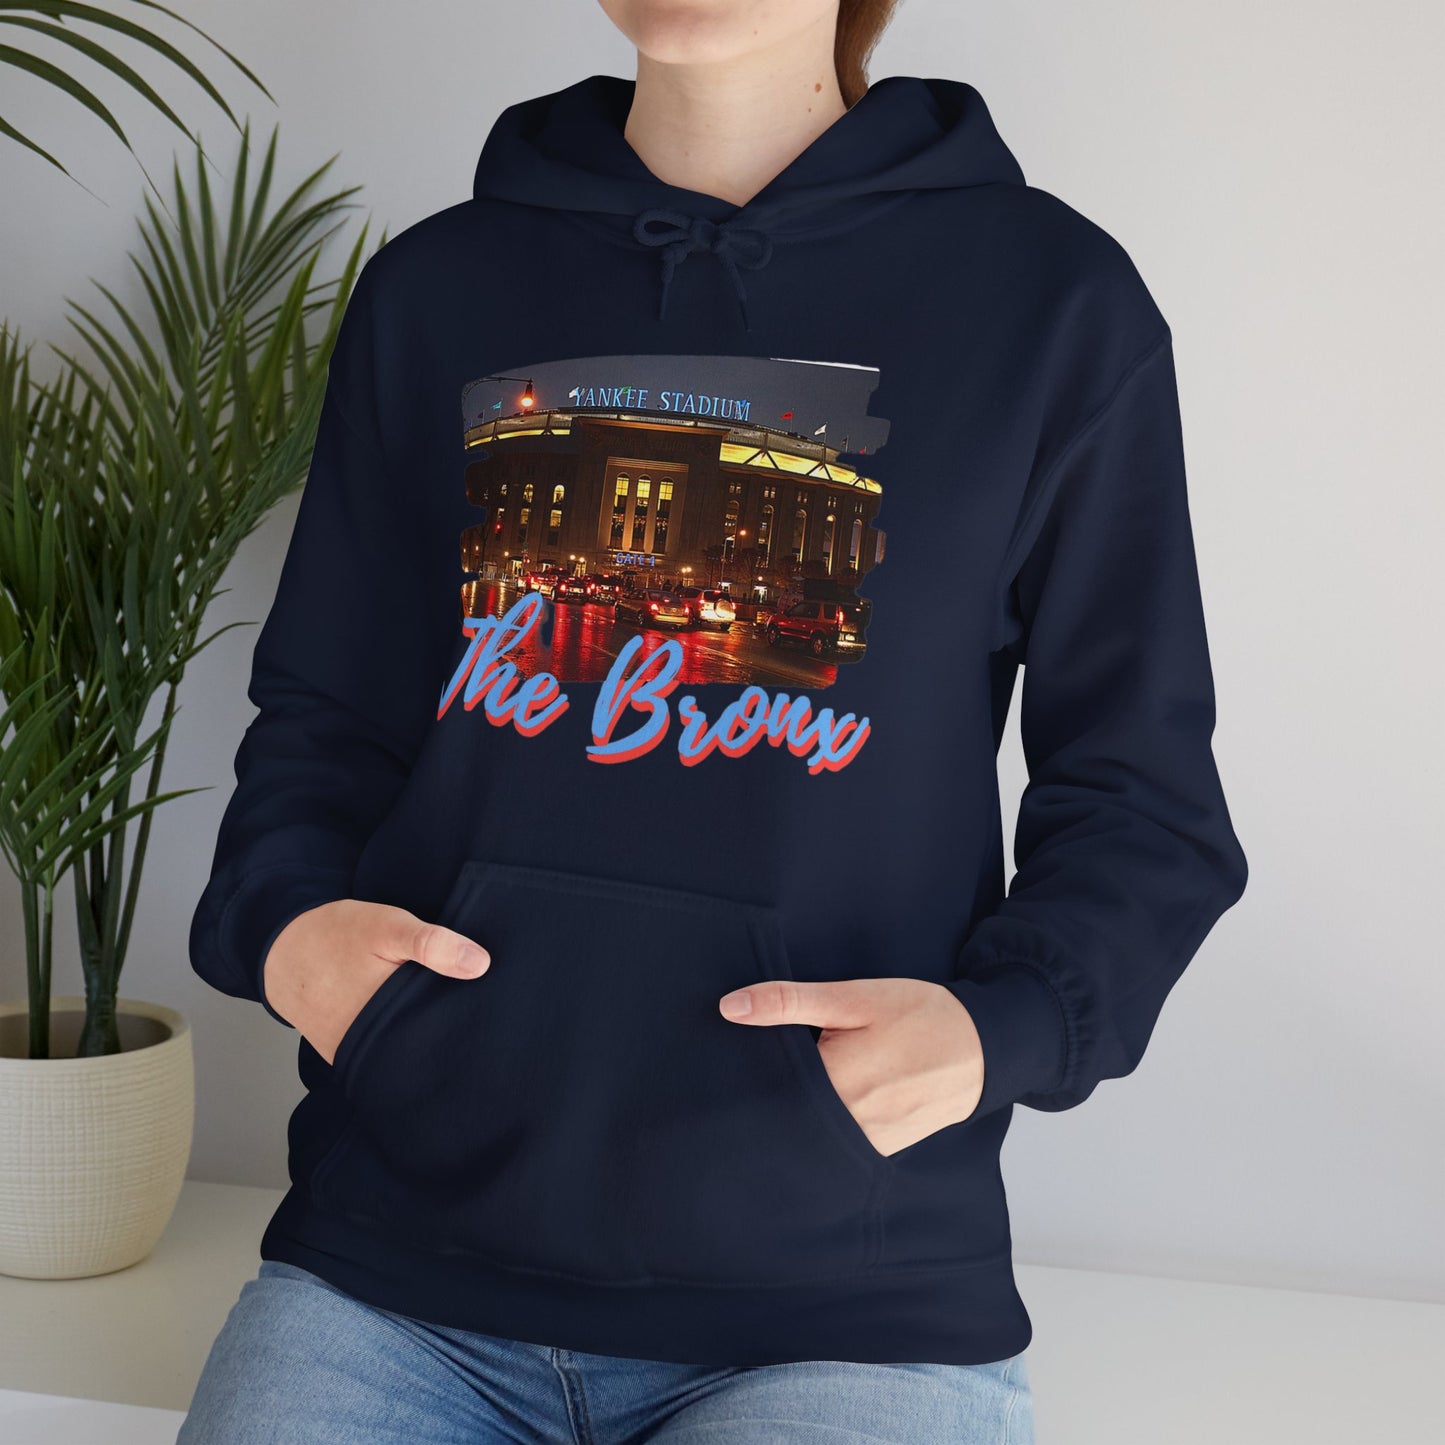 Big Bronx Energy Unisex Hoodie Sweatshirt